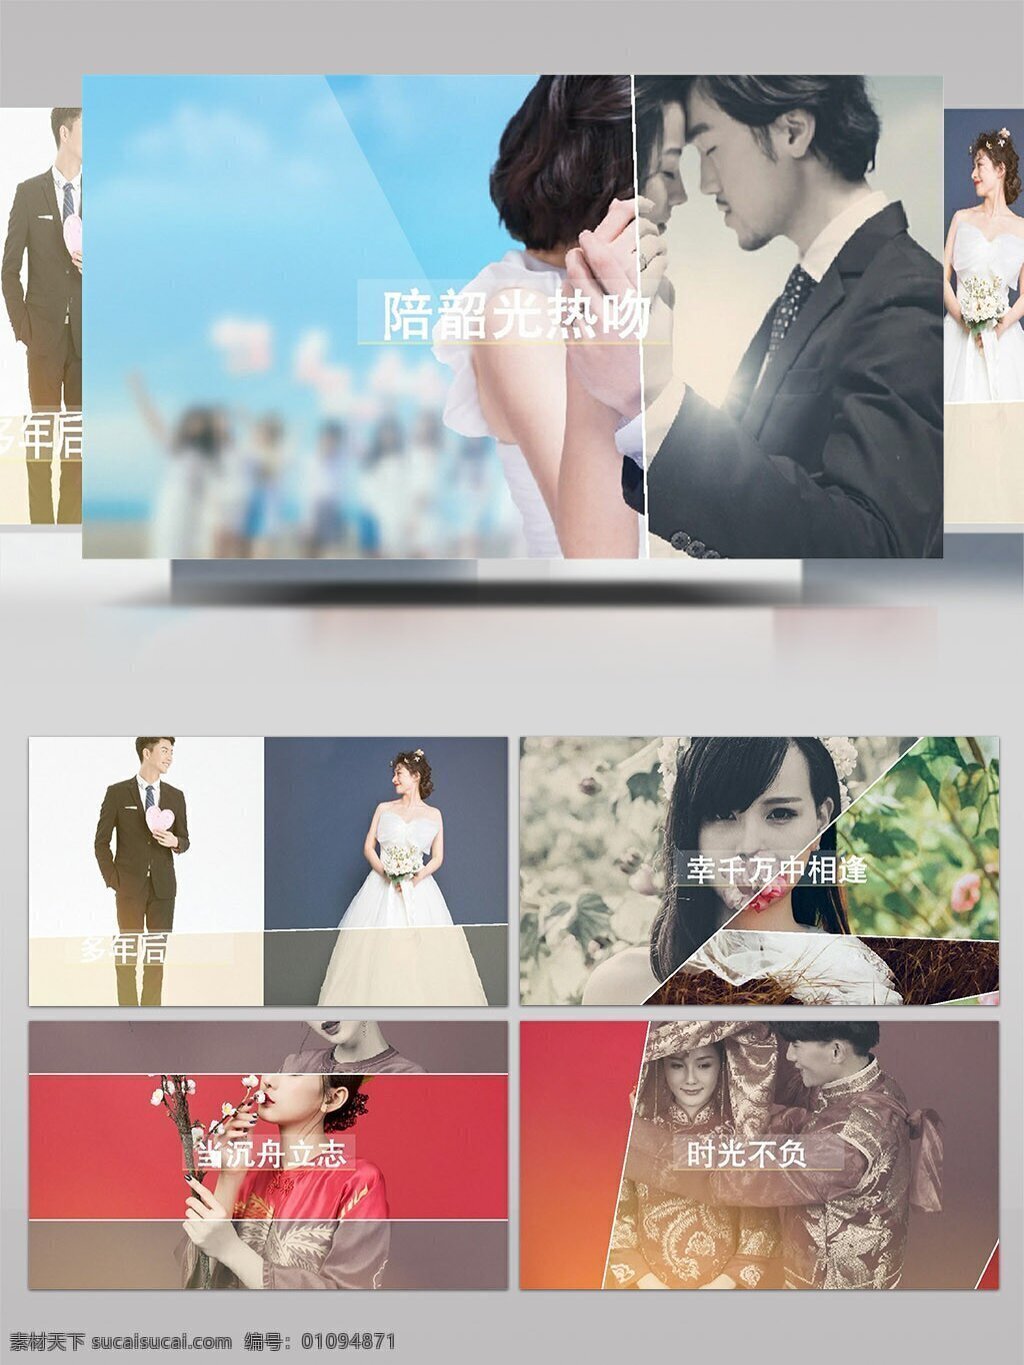 清新 柔软 线条 分 屏 图像 内容 展示 ae 模板 相册 简约 婚礼 细腻 优雅 分屏 转场 图文展示 温柔